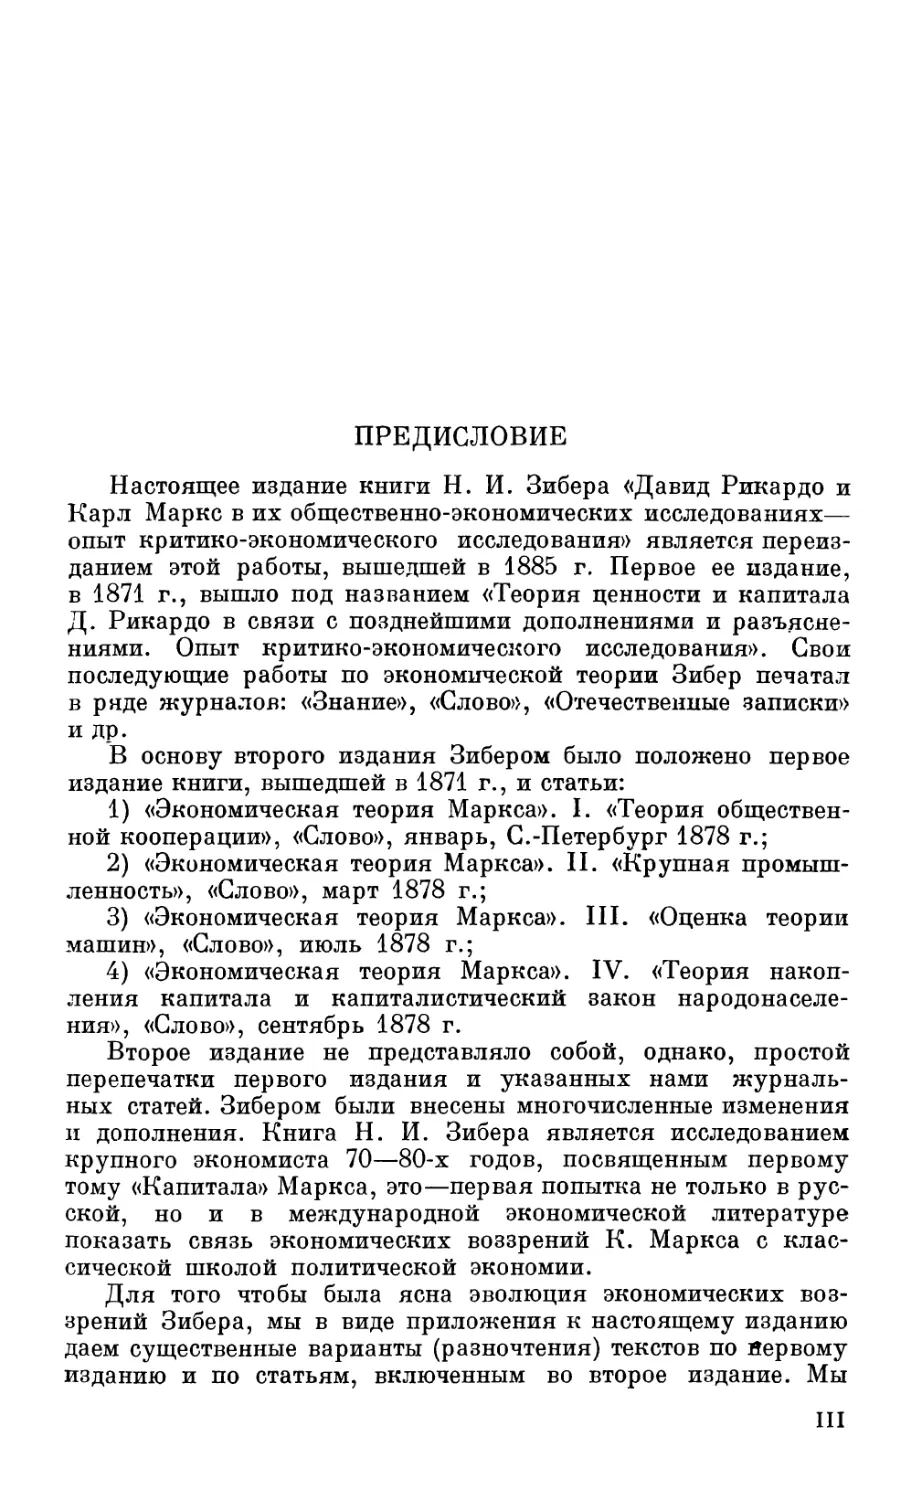 От Института экономики Академии Наук СССР и от издательства